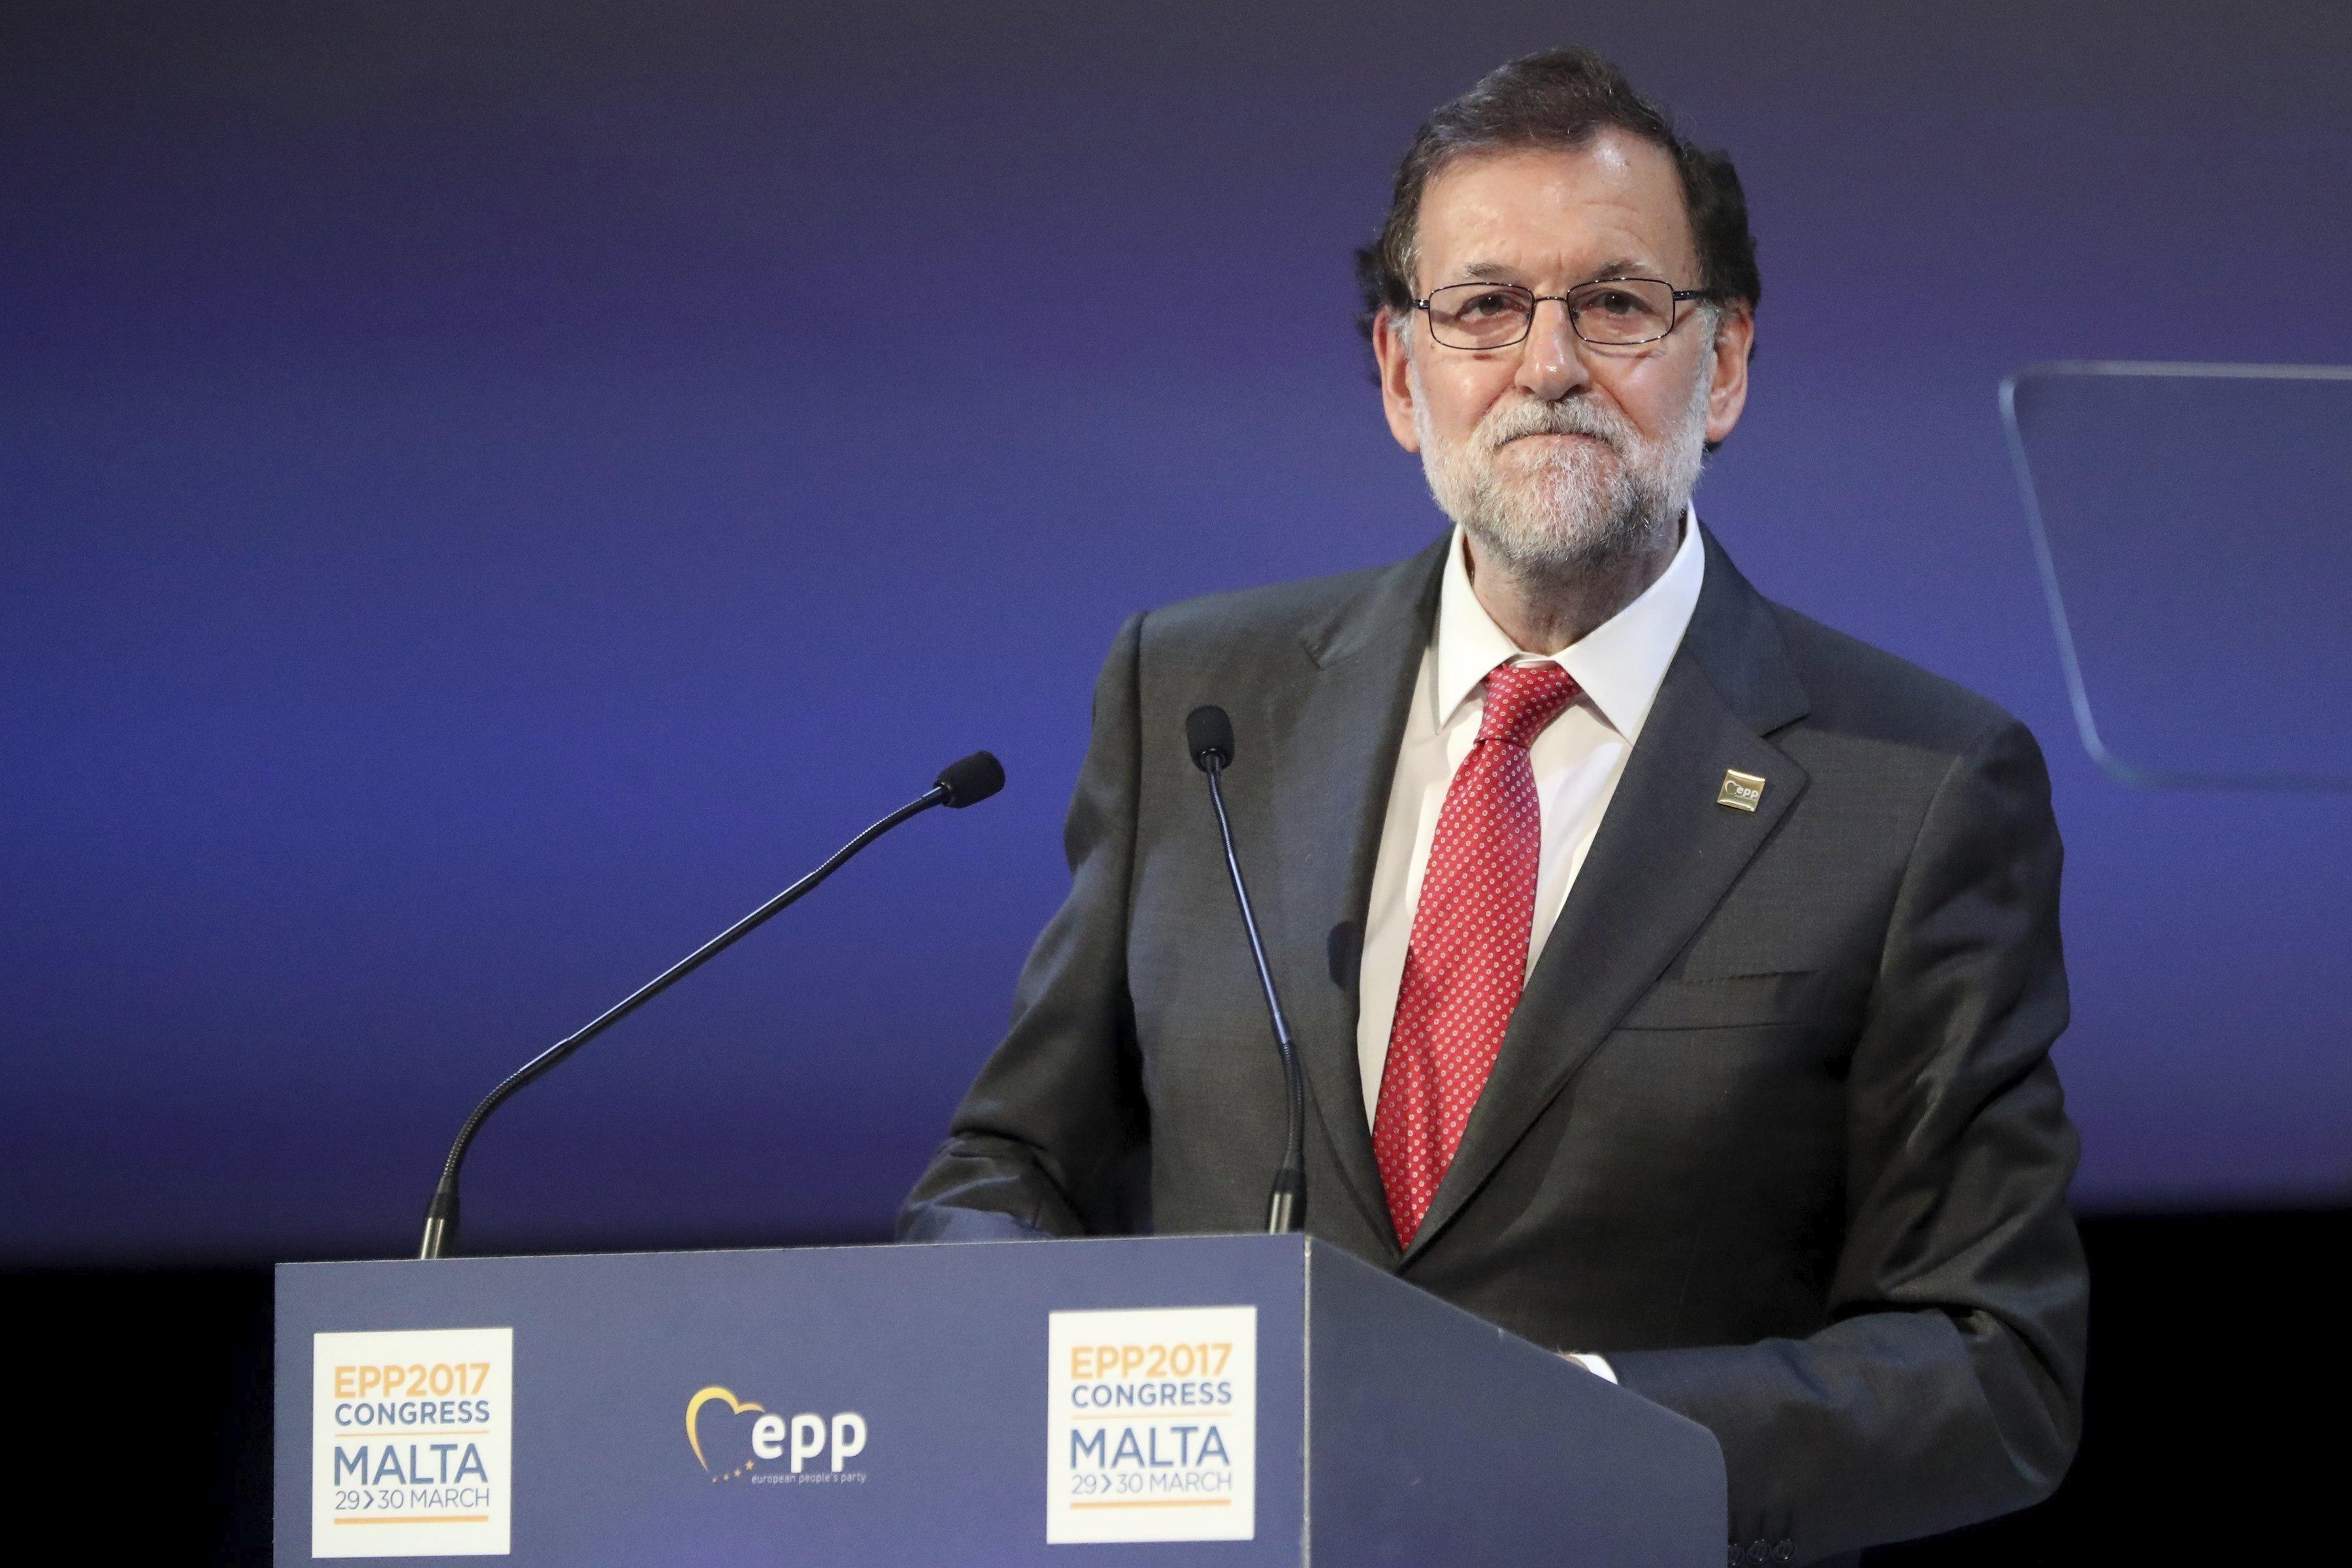 "Si se rompe división de poderes, no hay democracia": Rajoy sobre Venezuela